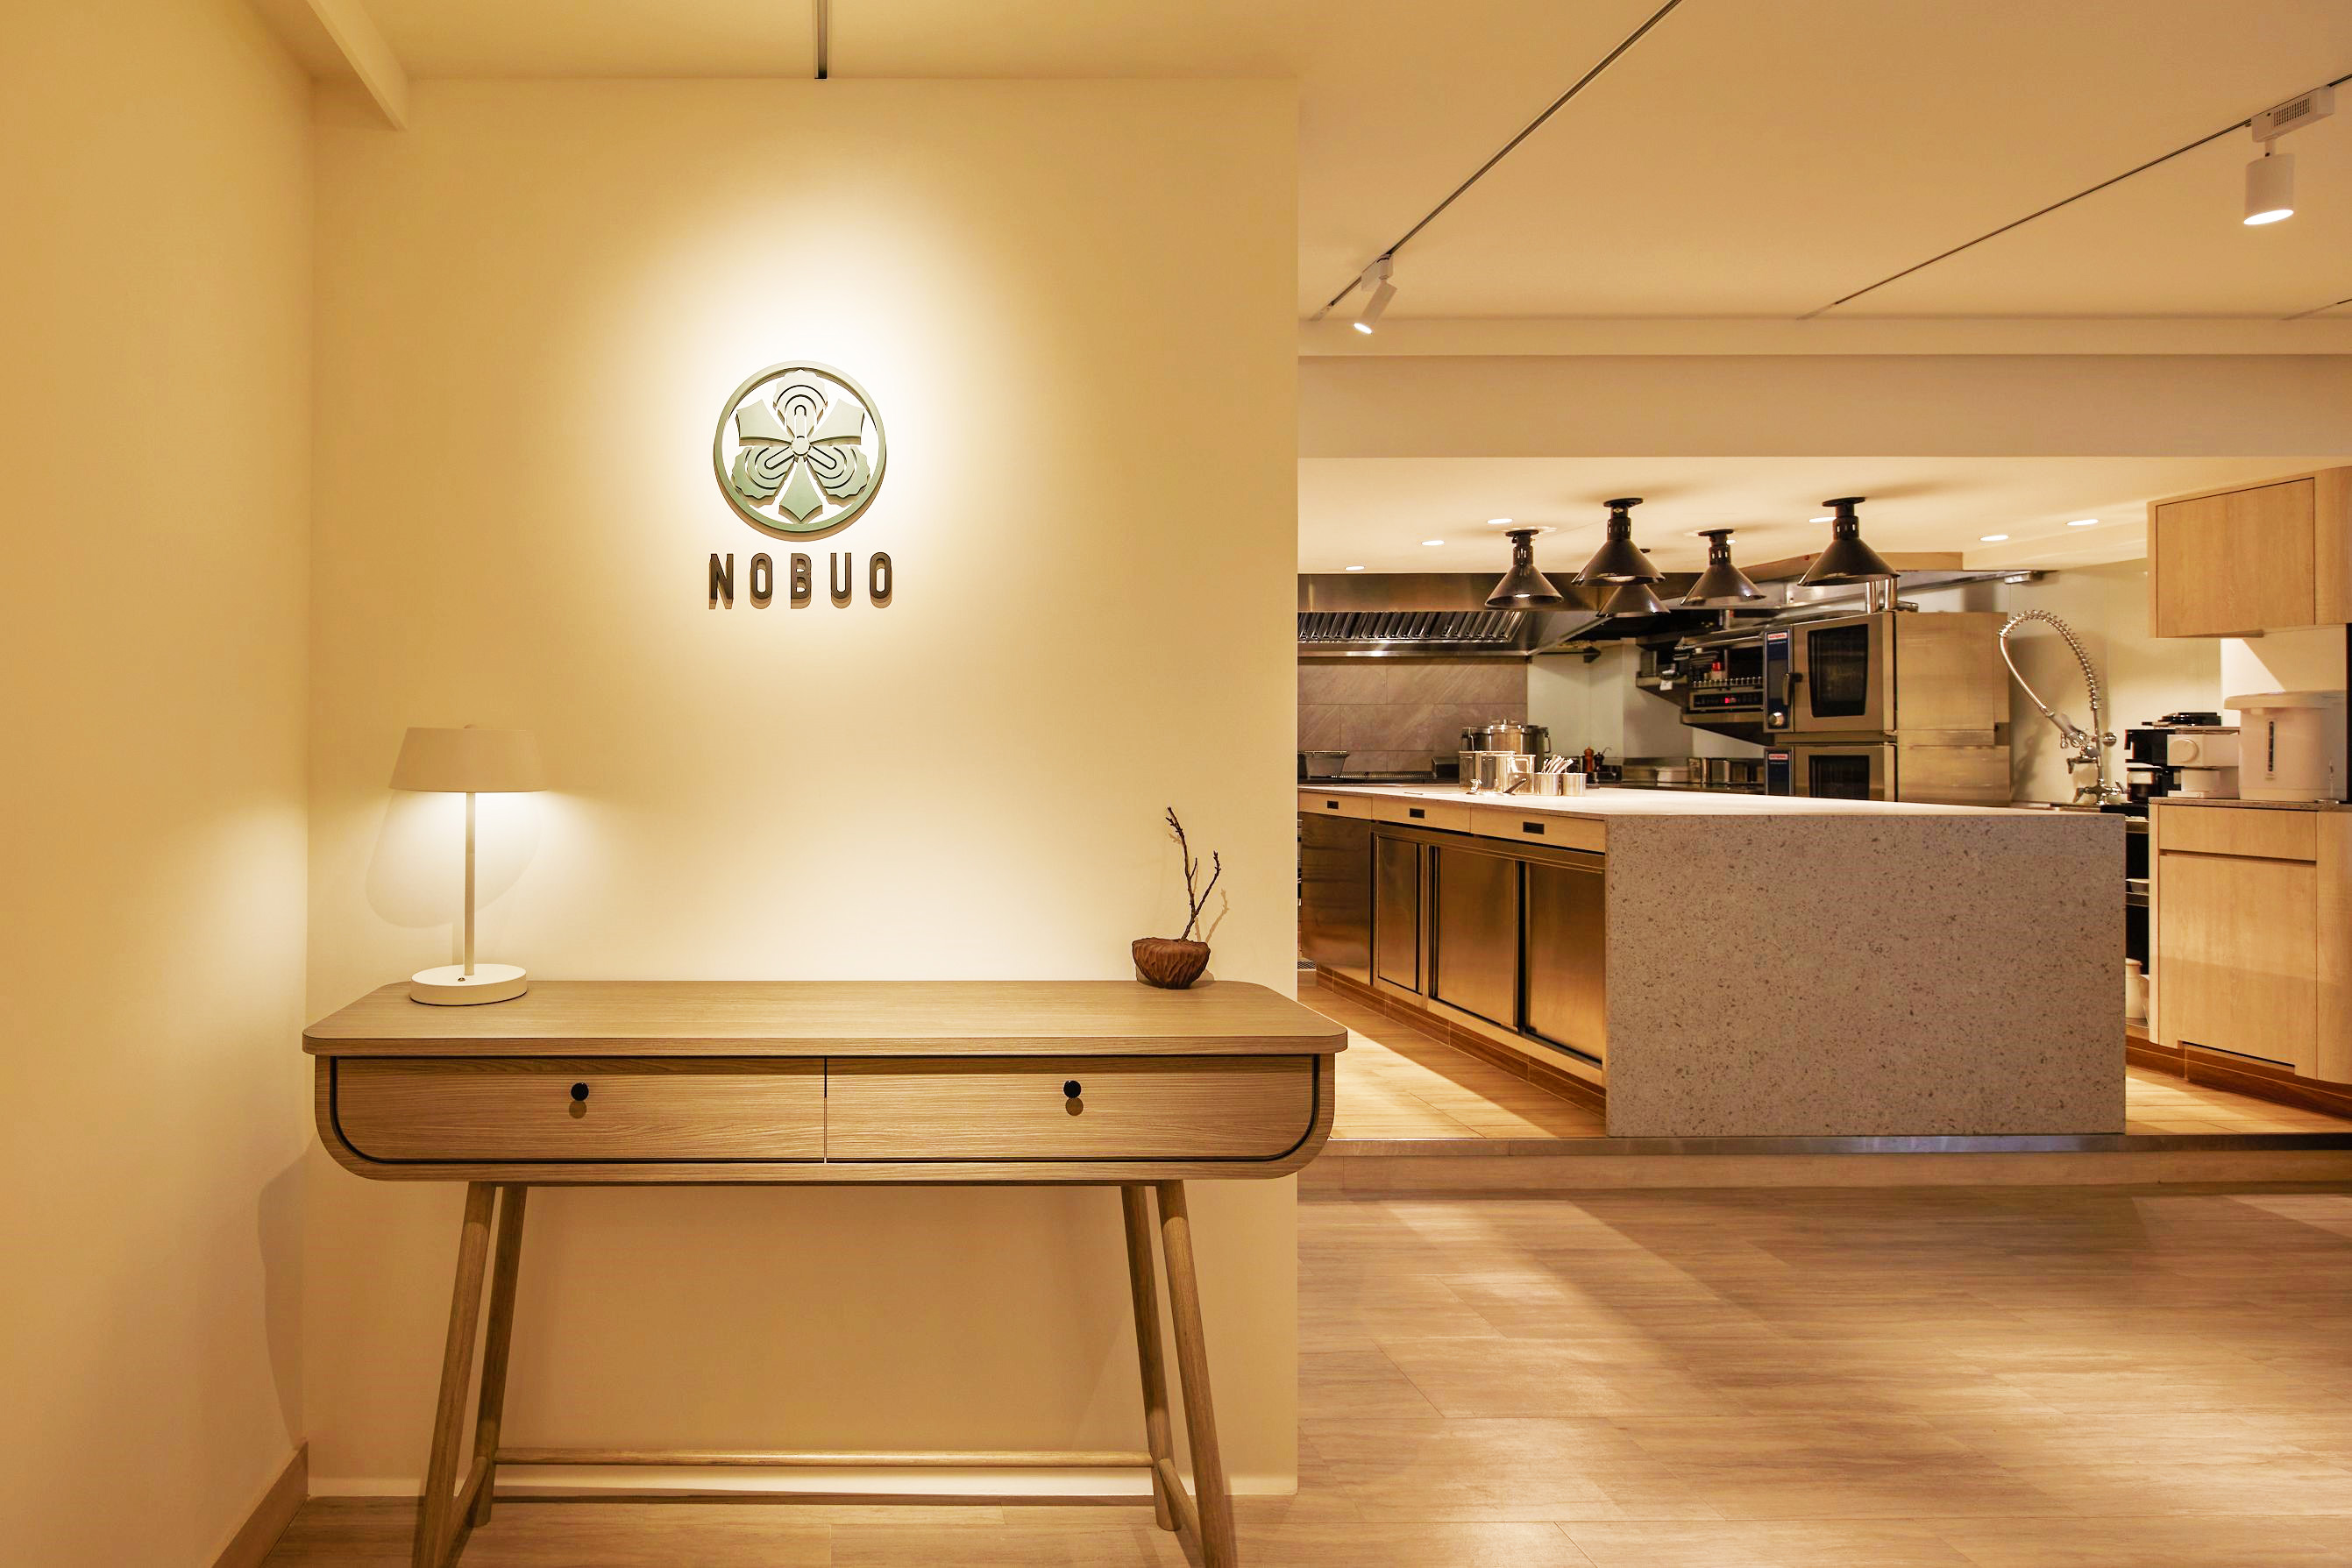 主廚李信男Nobu在從事餐飲20多年後，終於開了屬於自己的餐廳NOBUO，他更笑稱是他做過最小量體的餐廳。（圖片來源：NOBUO提供）